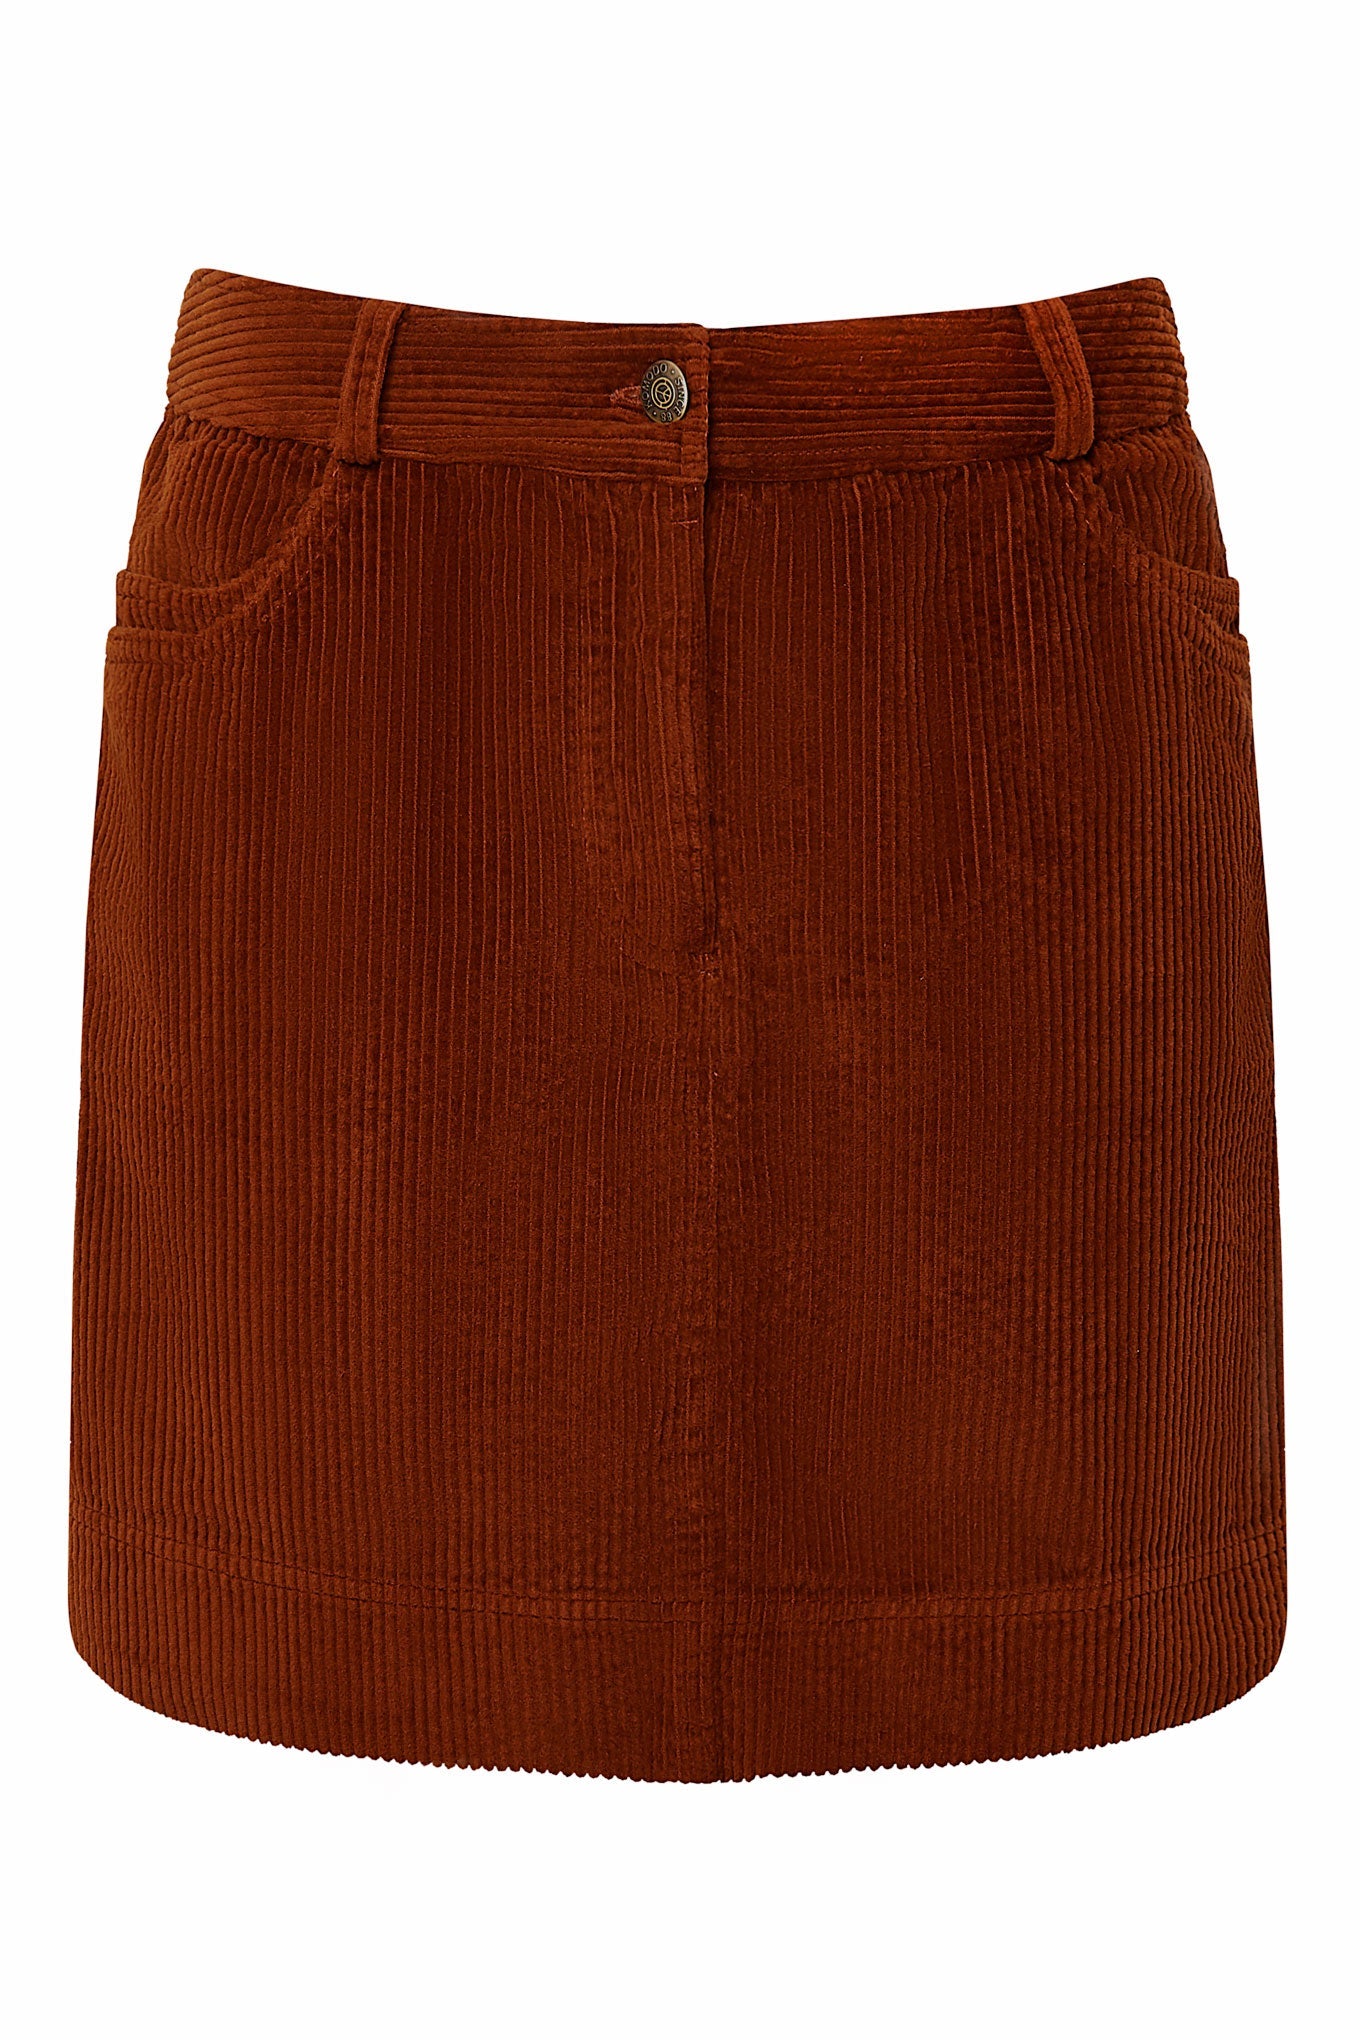 Mini-jupe LEONI en velours côtelé rouge-marron en coton 100% biologique de Komodo